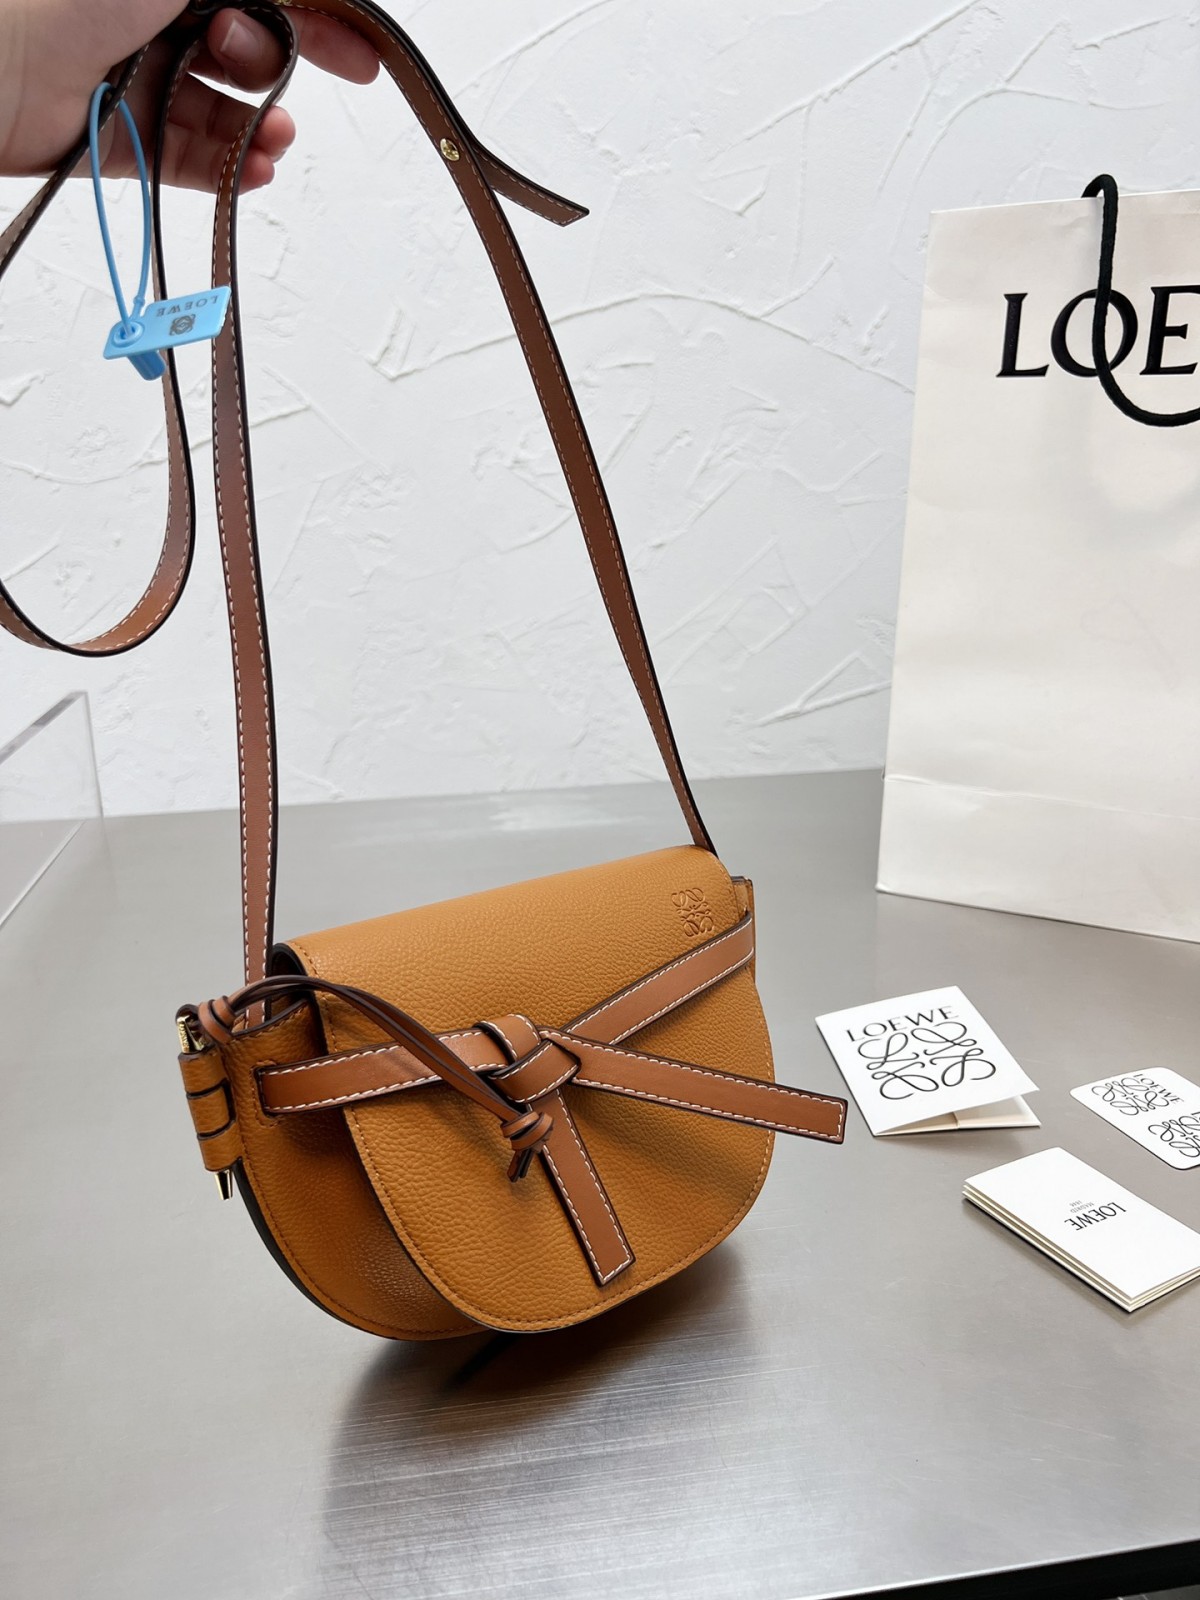 ทำไมทุกคนชอบกระเป๋าจำลอง Loewe Gate (2022 Edition) - ร้านค้าออนไลน์กระเป๋าปลอม Louis Vuitton คุณภาพดีที่สุด ออกแบบกระเป๋าจำลอง ru